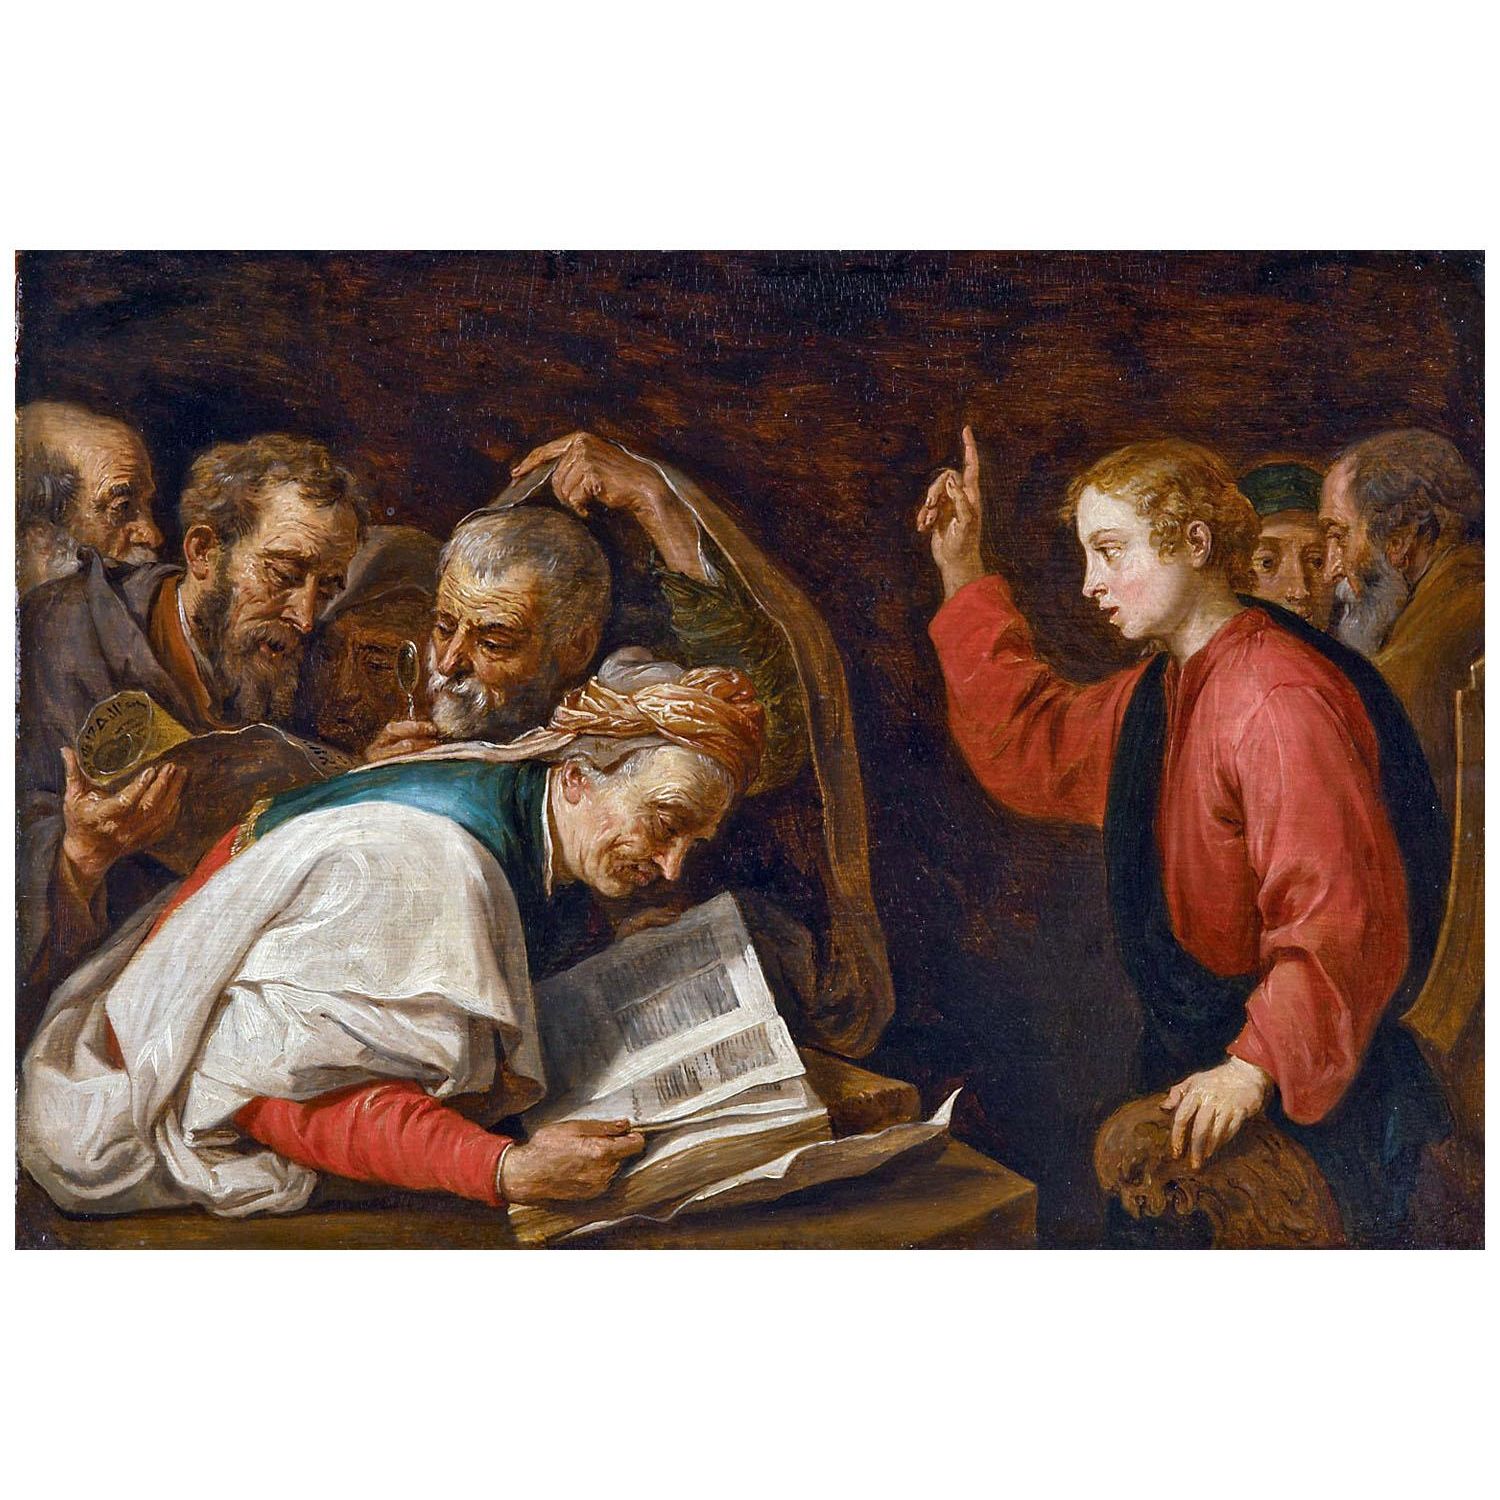 David Teniers II. Jesus among Doctors. 1651. KHM Wien 